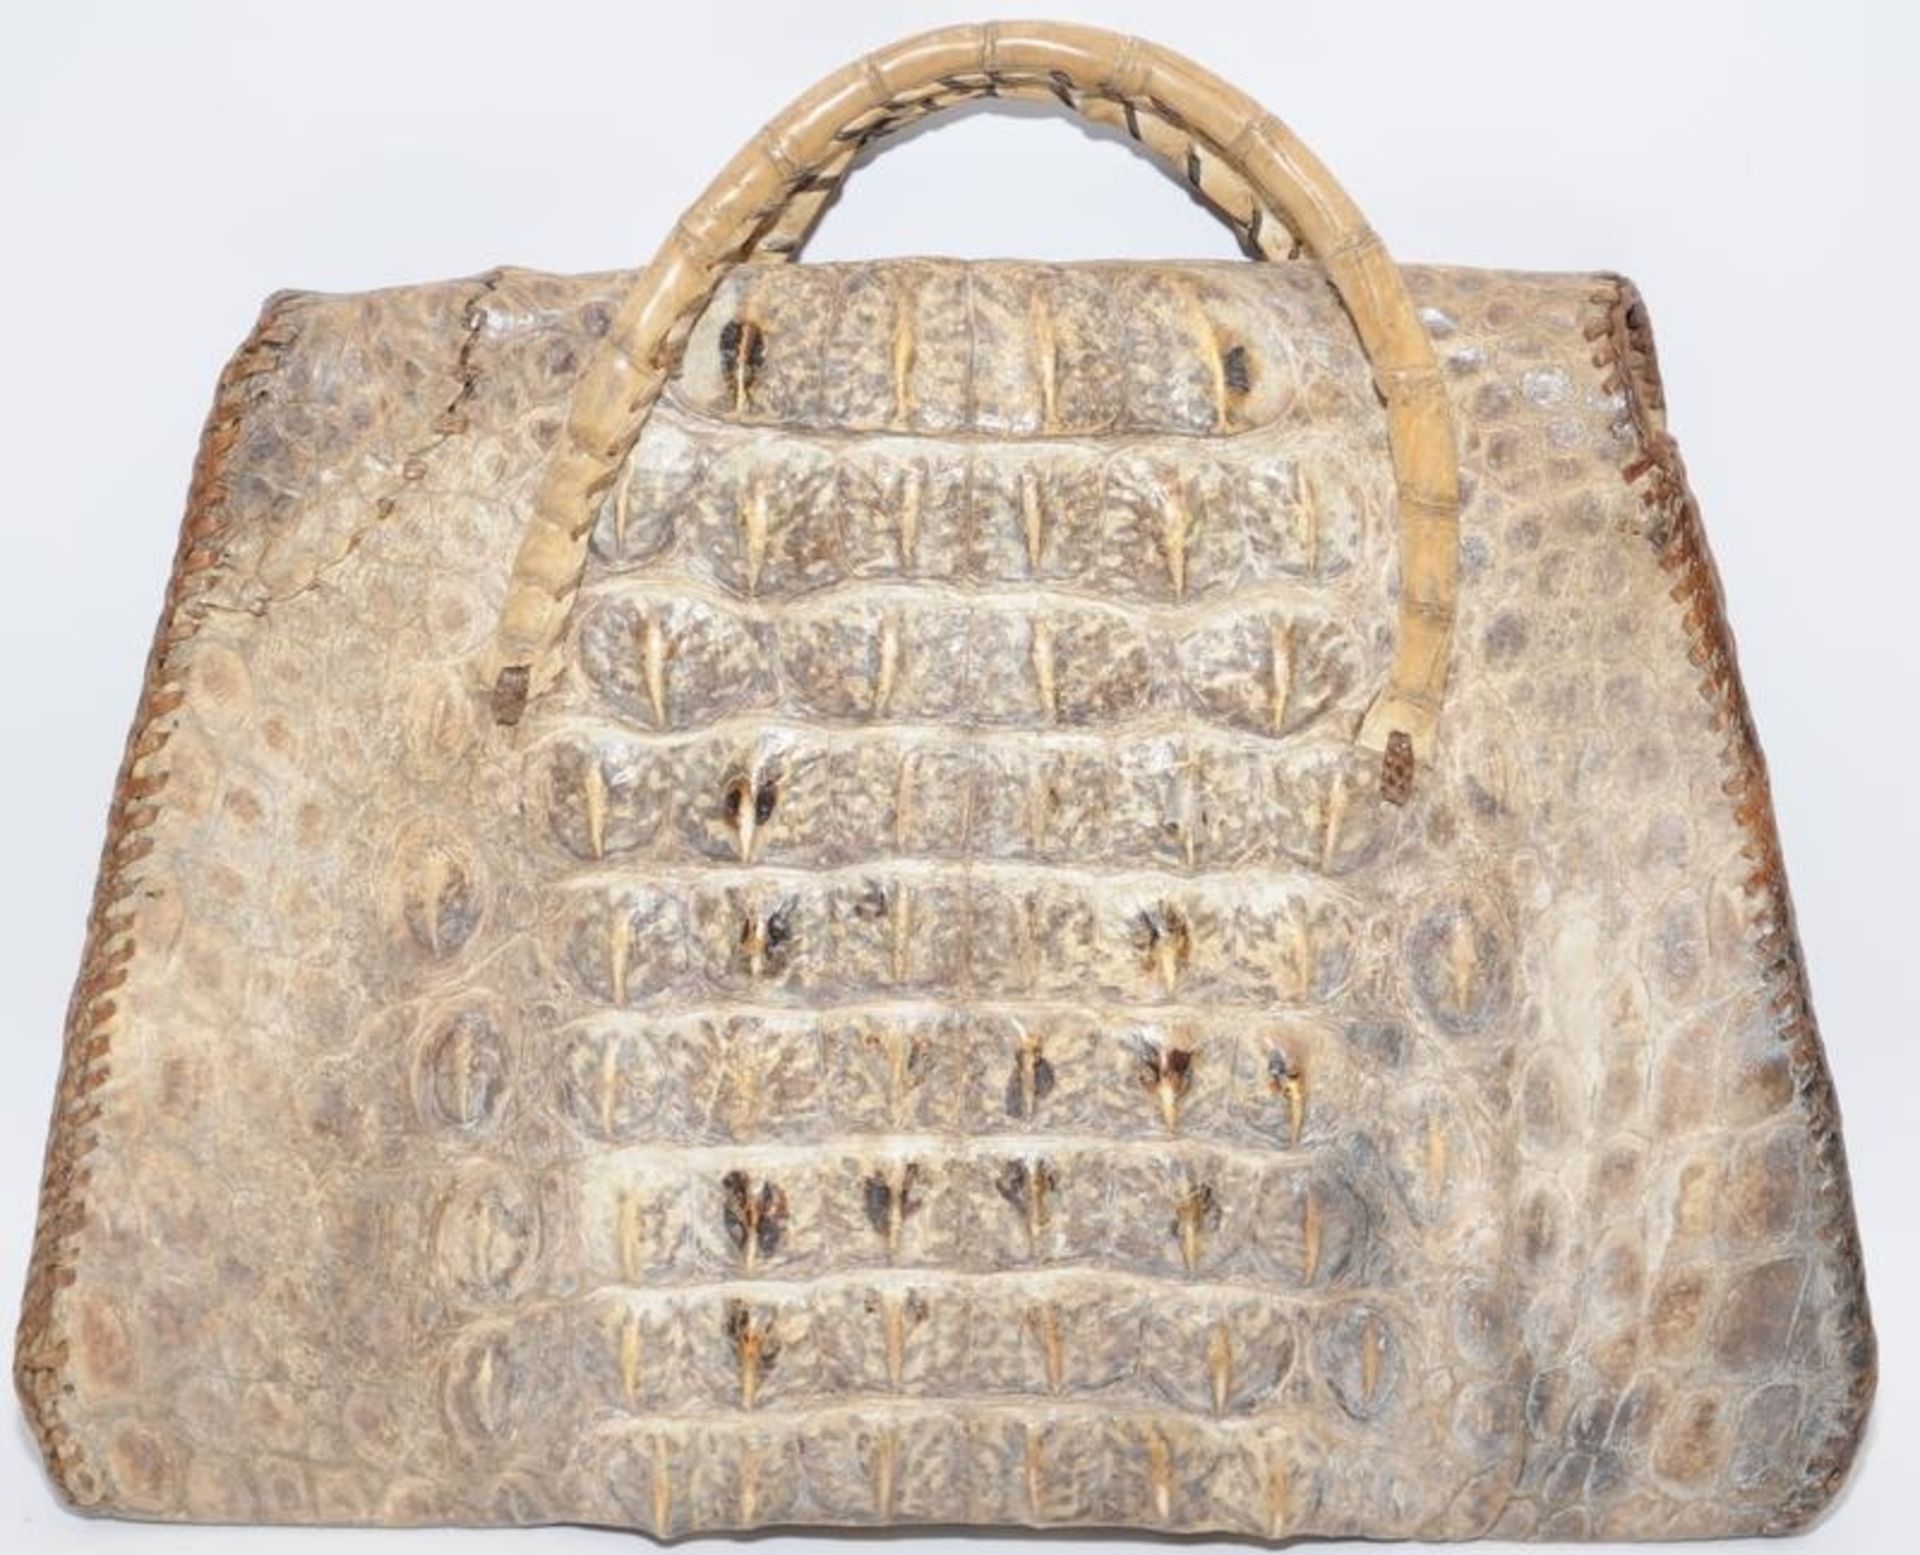 Vintage real alligator skin handbag. 30cms across at widest point - Image 2 of 4